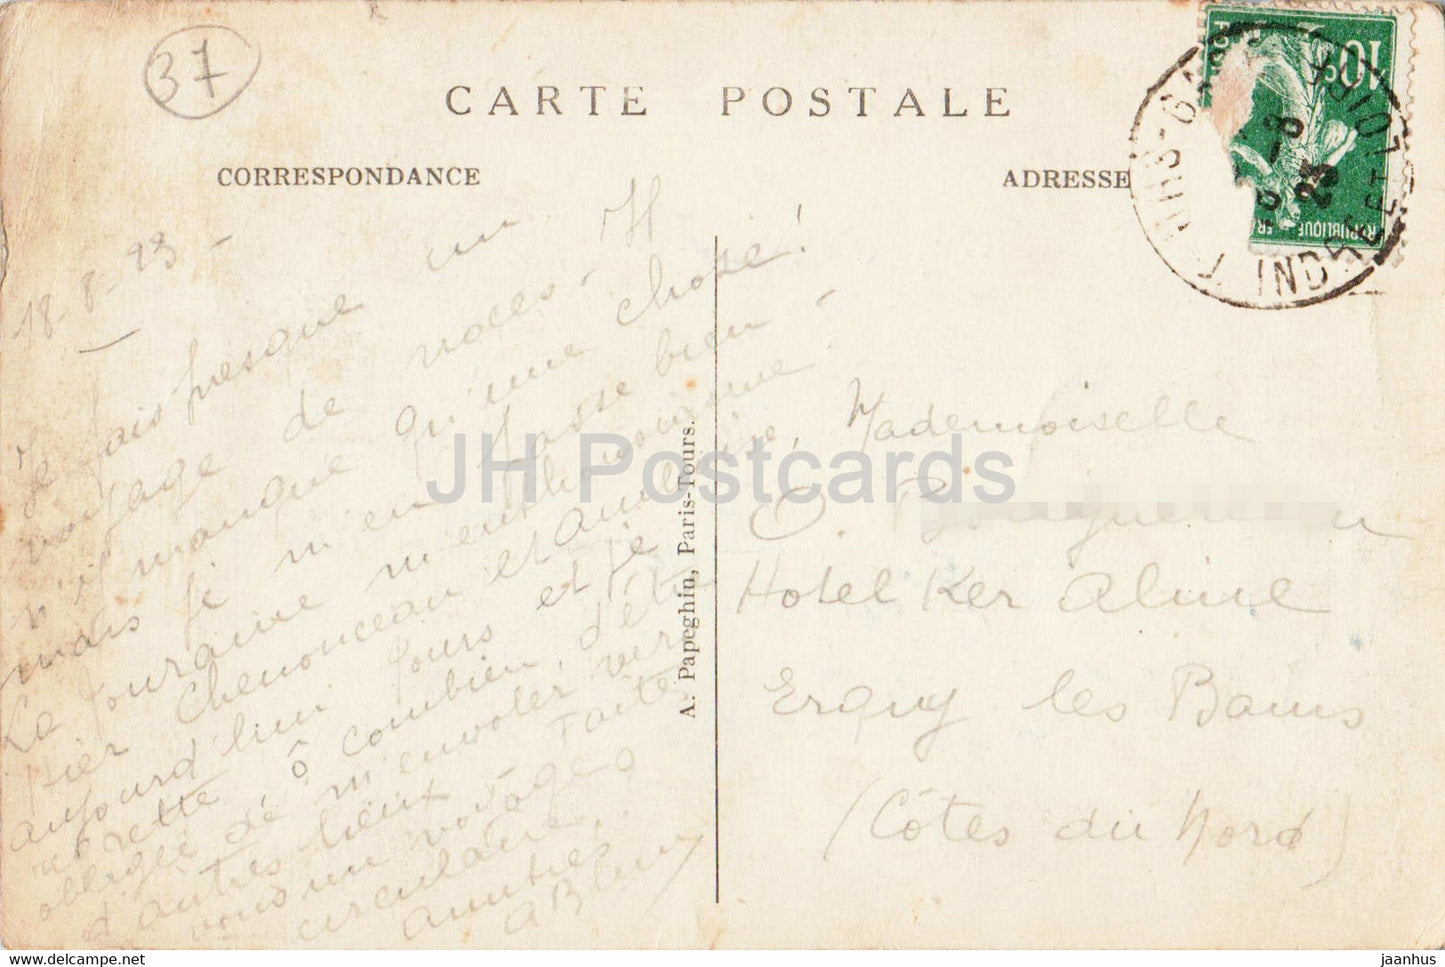 Touren – Vue Generale sur la Loire le Pont de Pierre – La Cathedrale St Gatien – 1 – alte Postkarte – 1923 – Frankreich – gebraucht